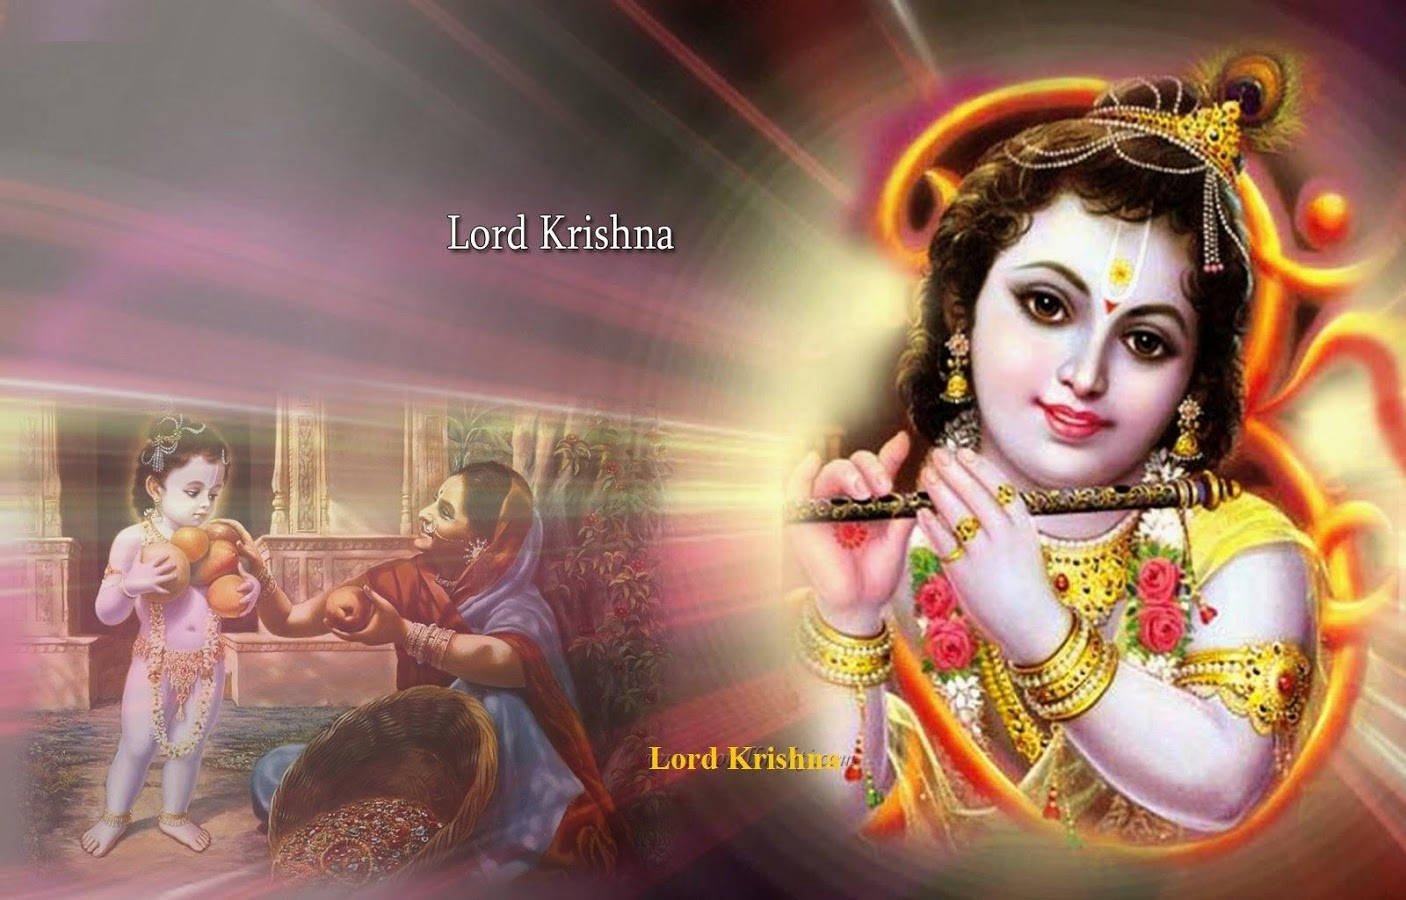 Free Krishna Bhagwan Wallpaper Downloads, [100+] Krishna Bhagwan Wallpapers  for FREE 